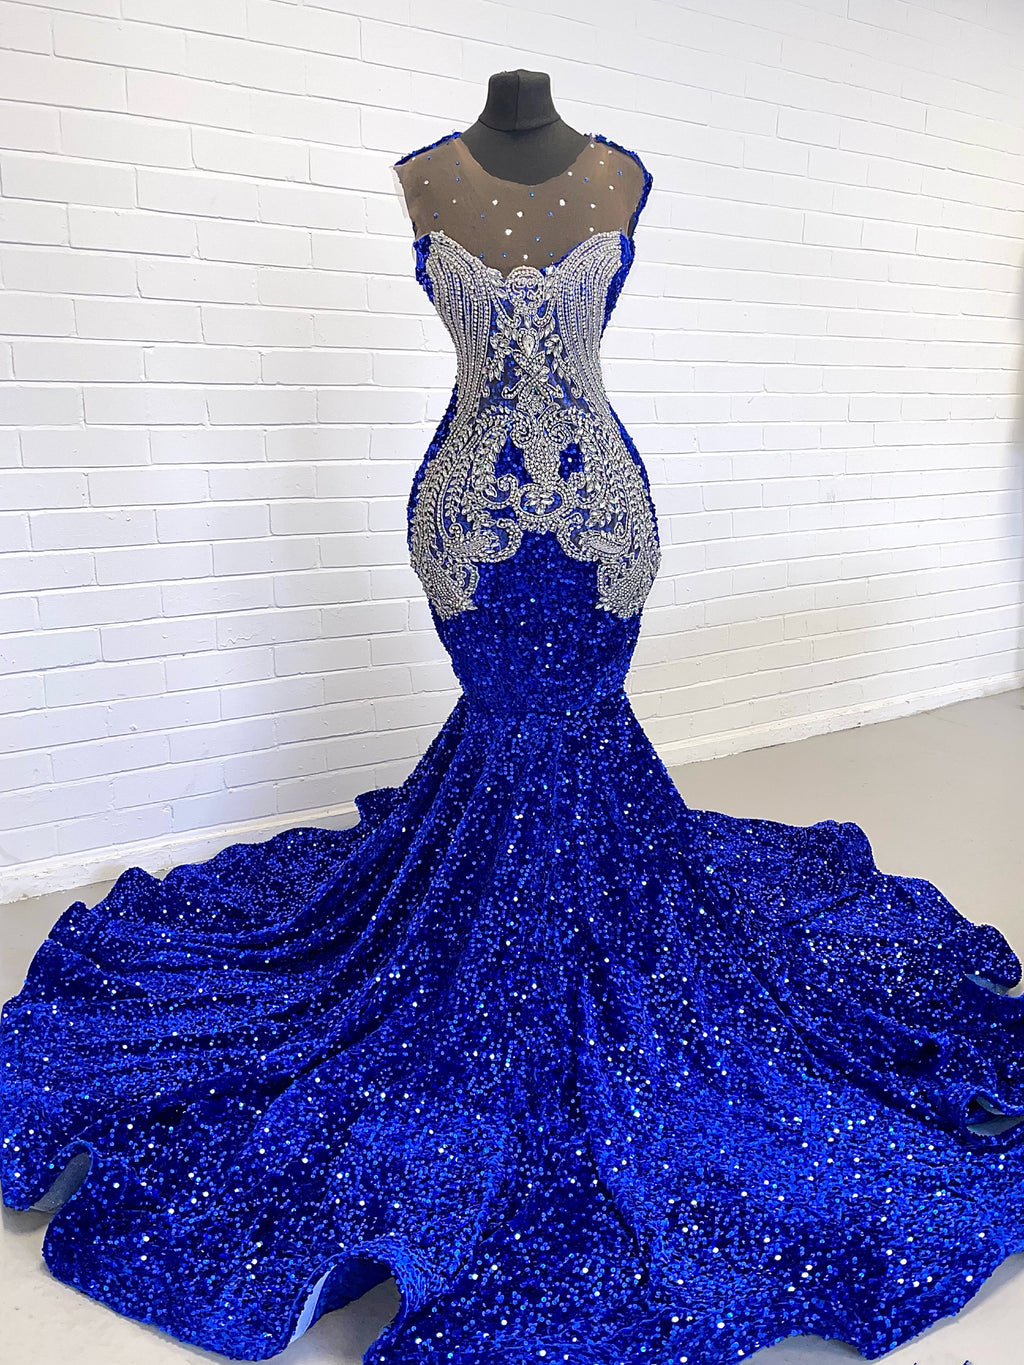 Fantasia Sequin dress